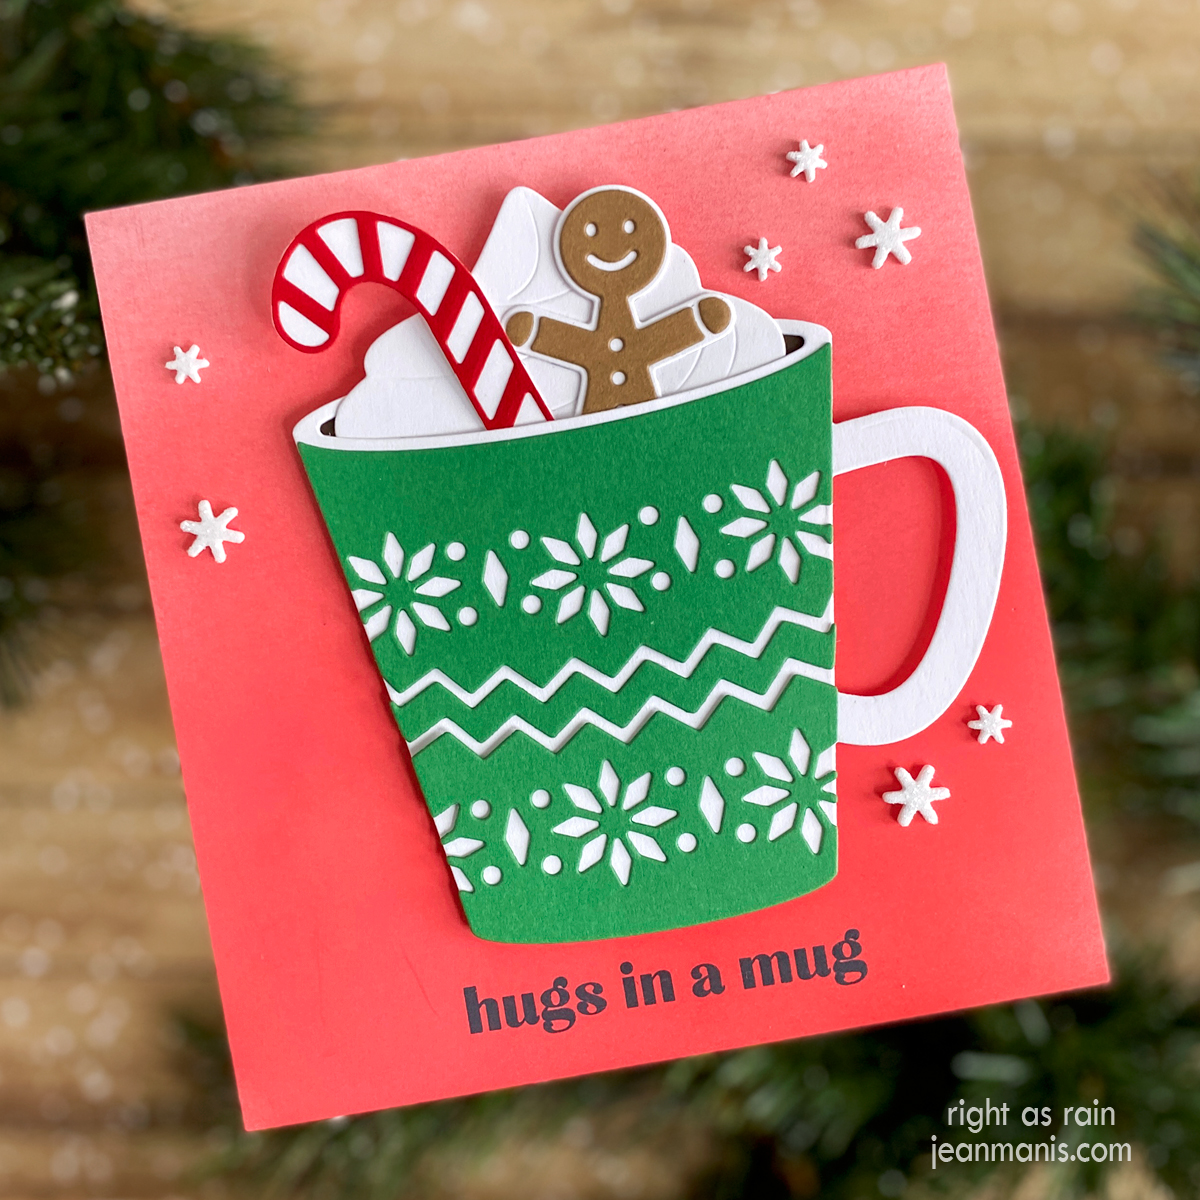 Hugs in a Mug – A Cozy Christmas Card